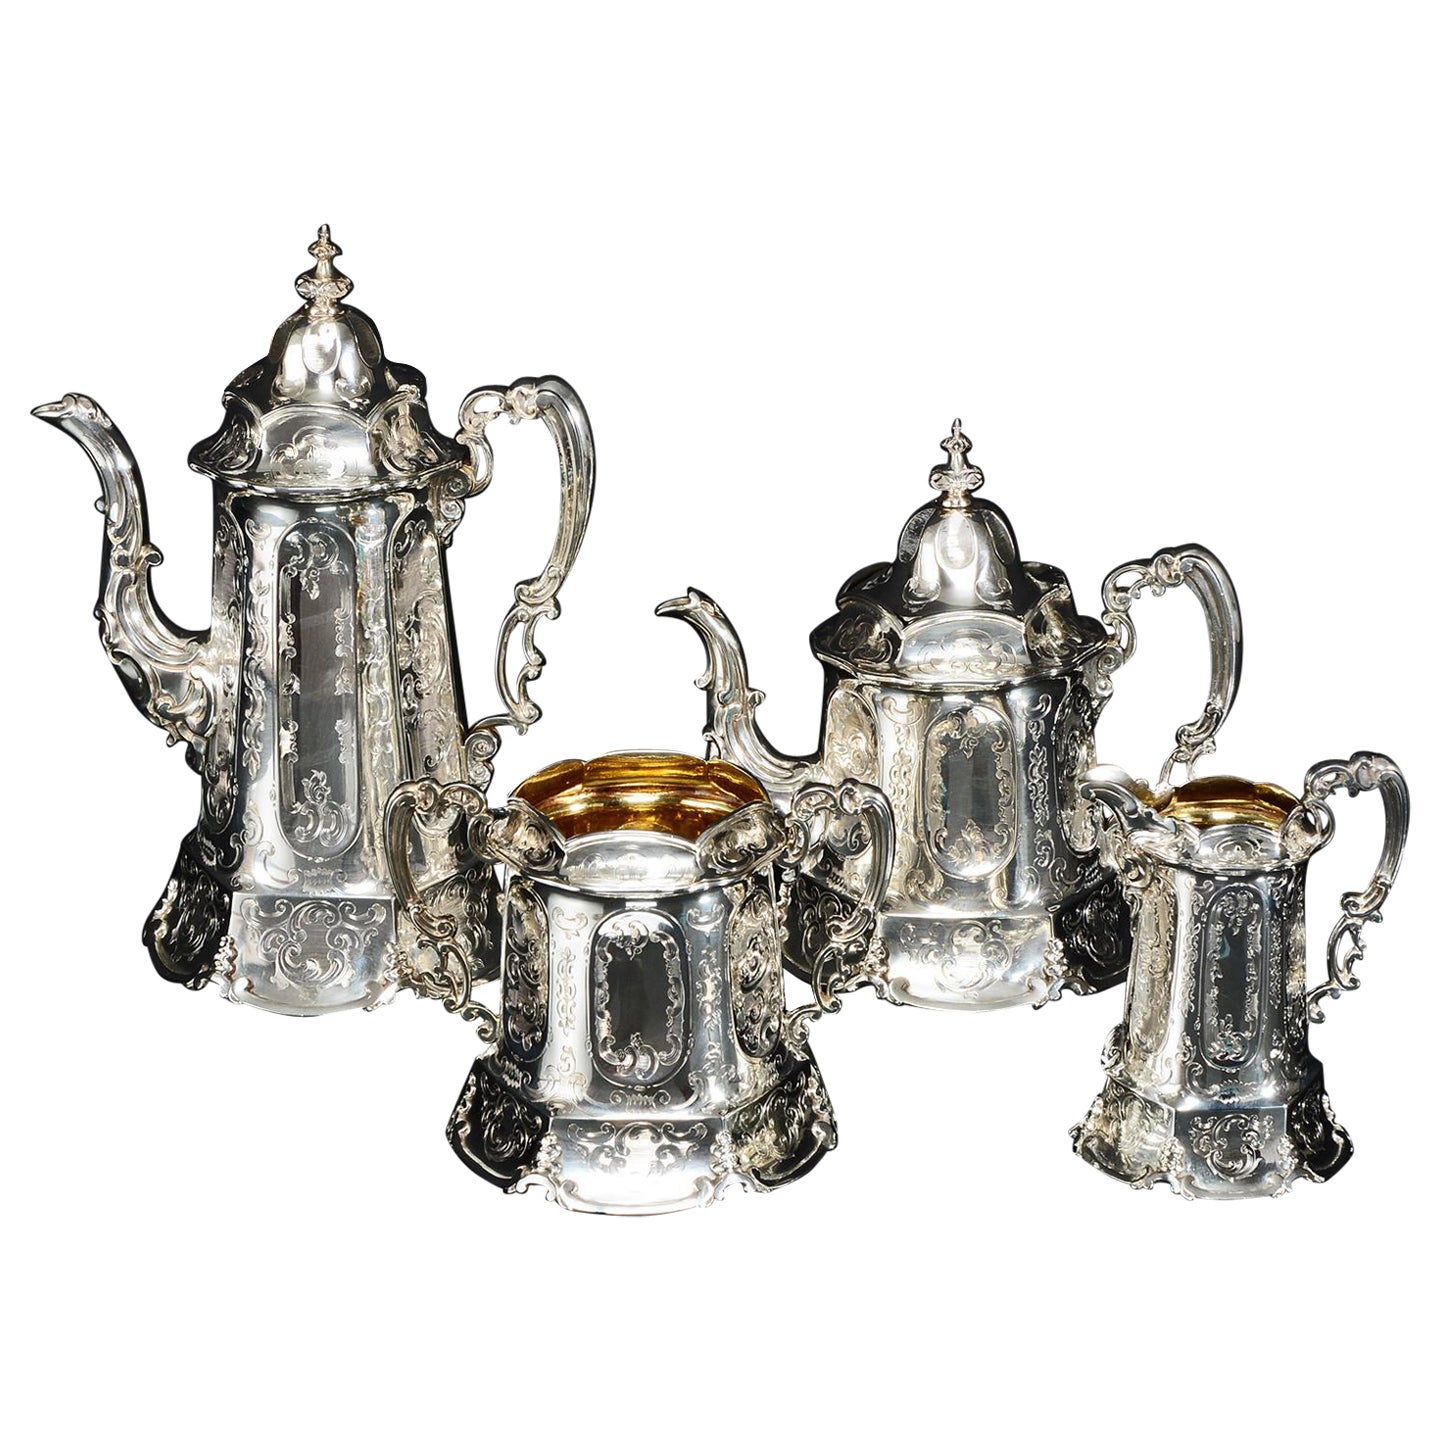 Vierteiliges viktorianisches Tee- und Kaffeeservice aus Silber, 1855